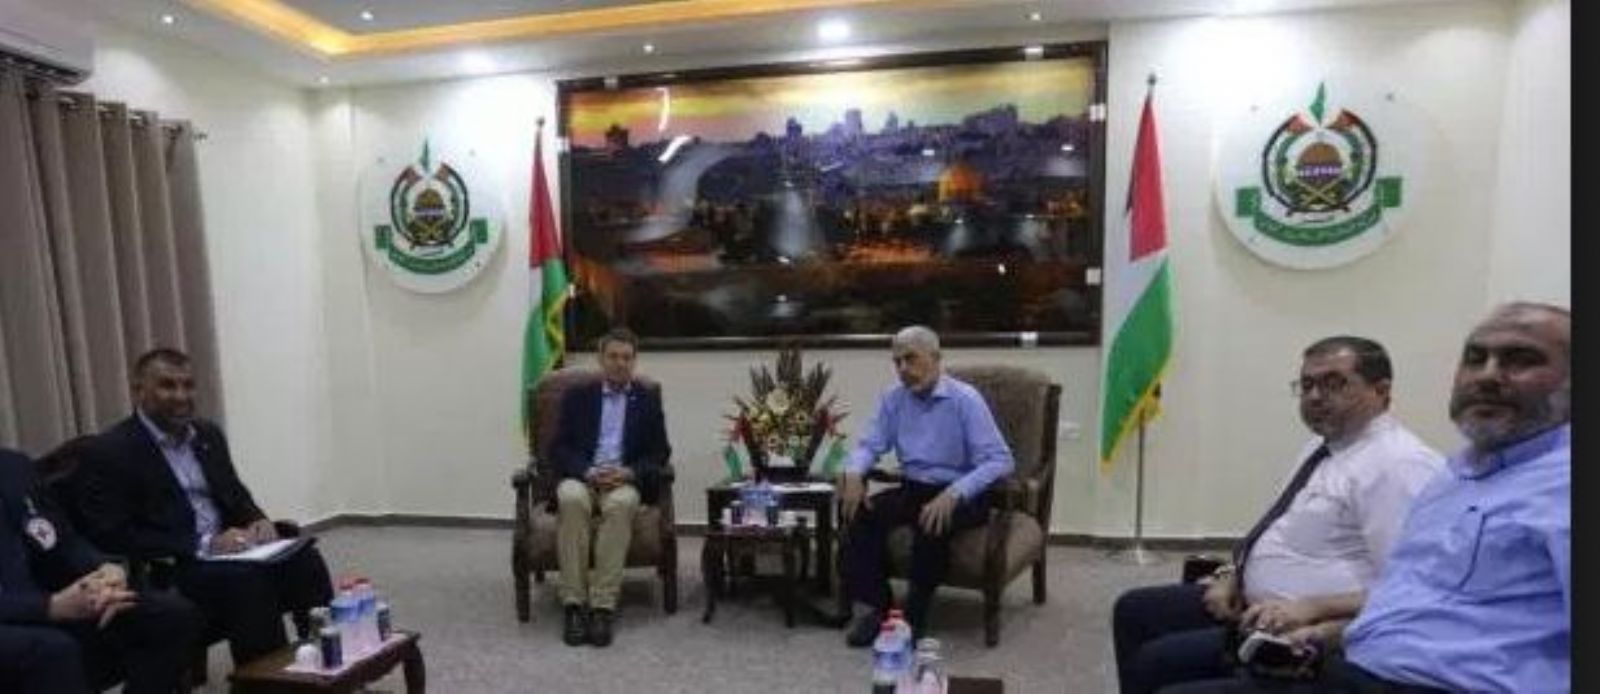 Fruitful meeting between ICRC head, Hamas leader in Gaza